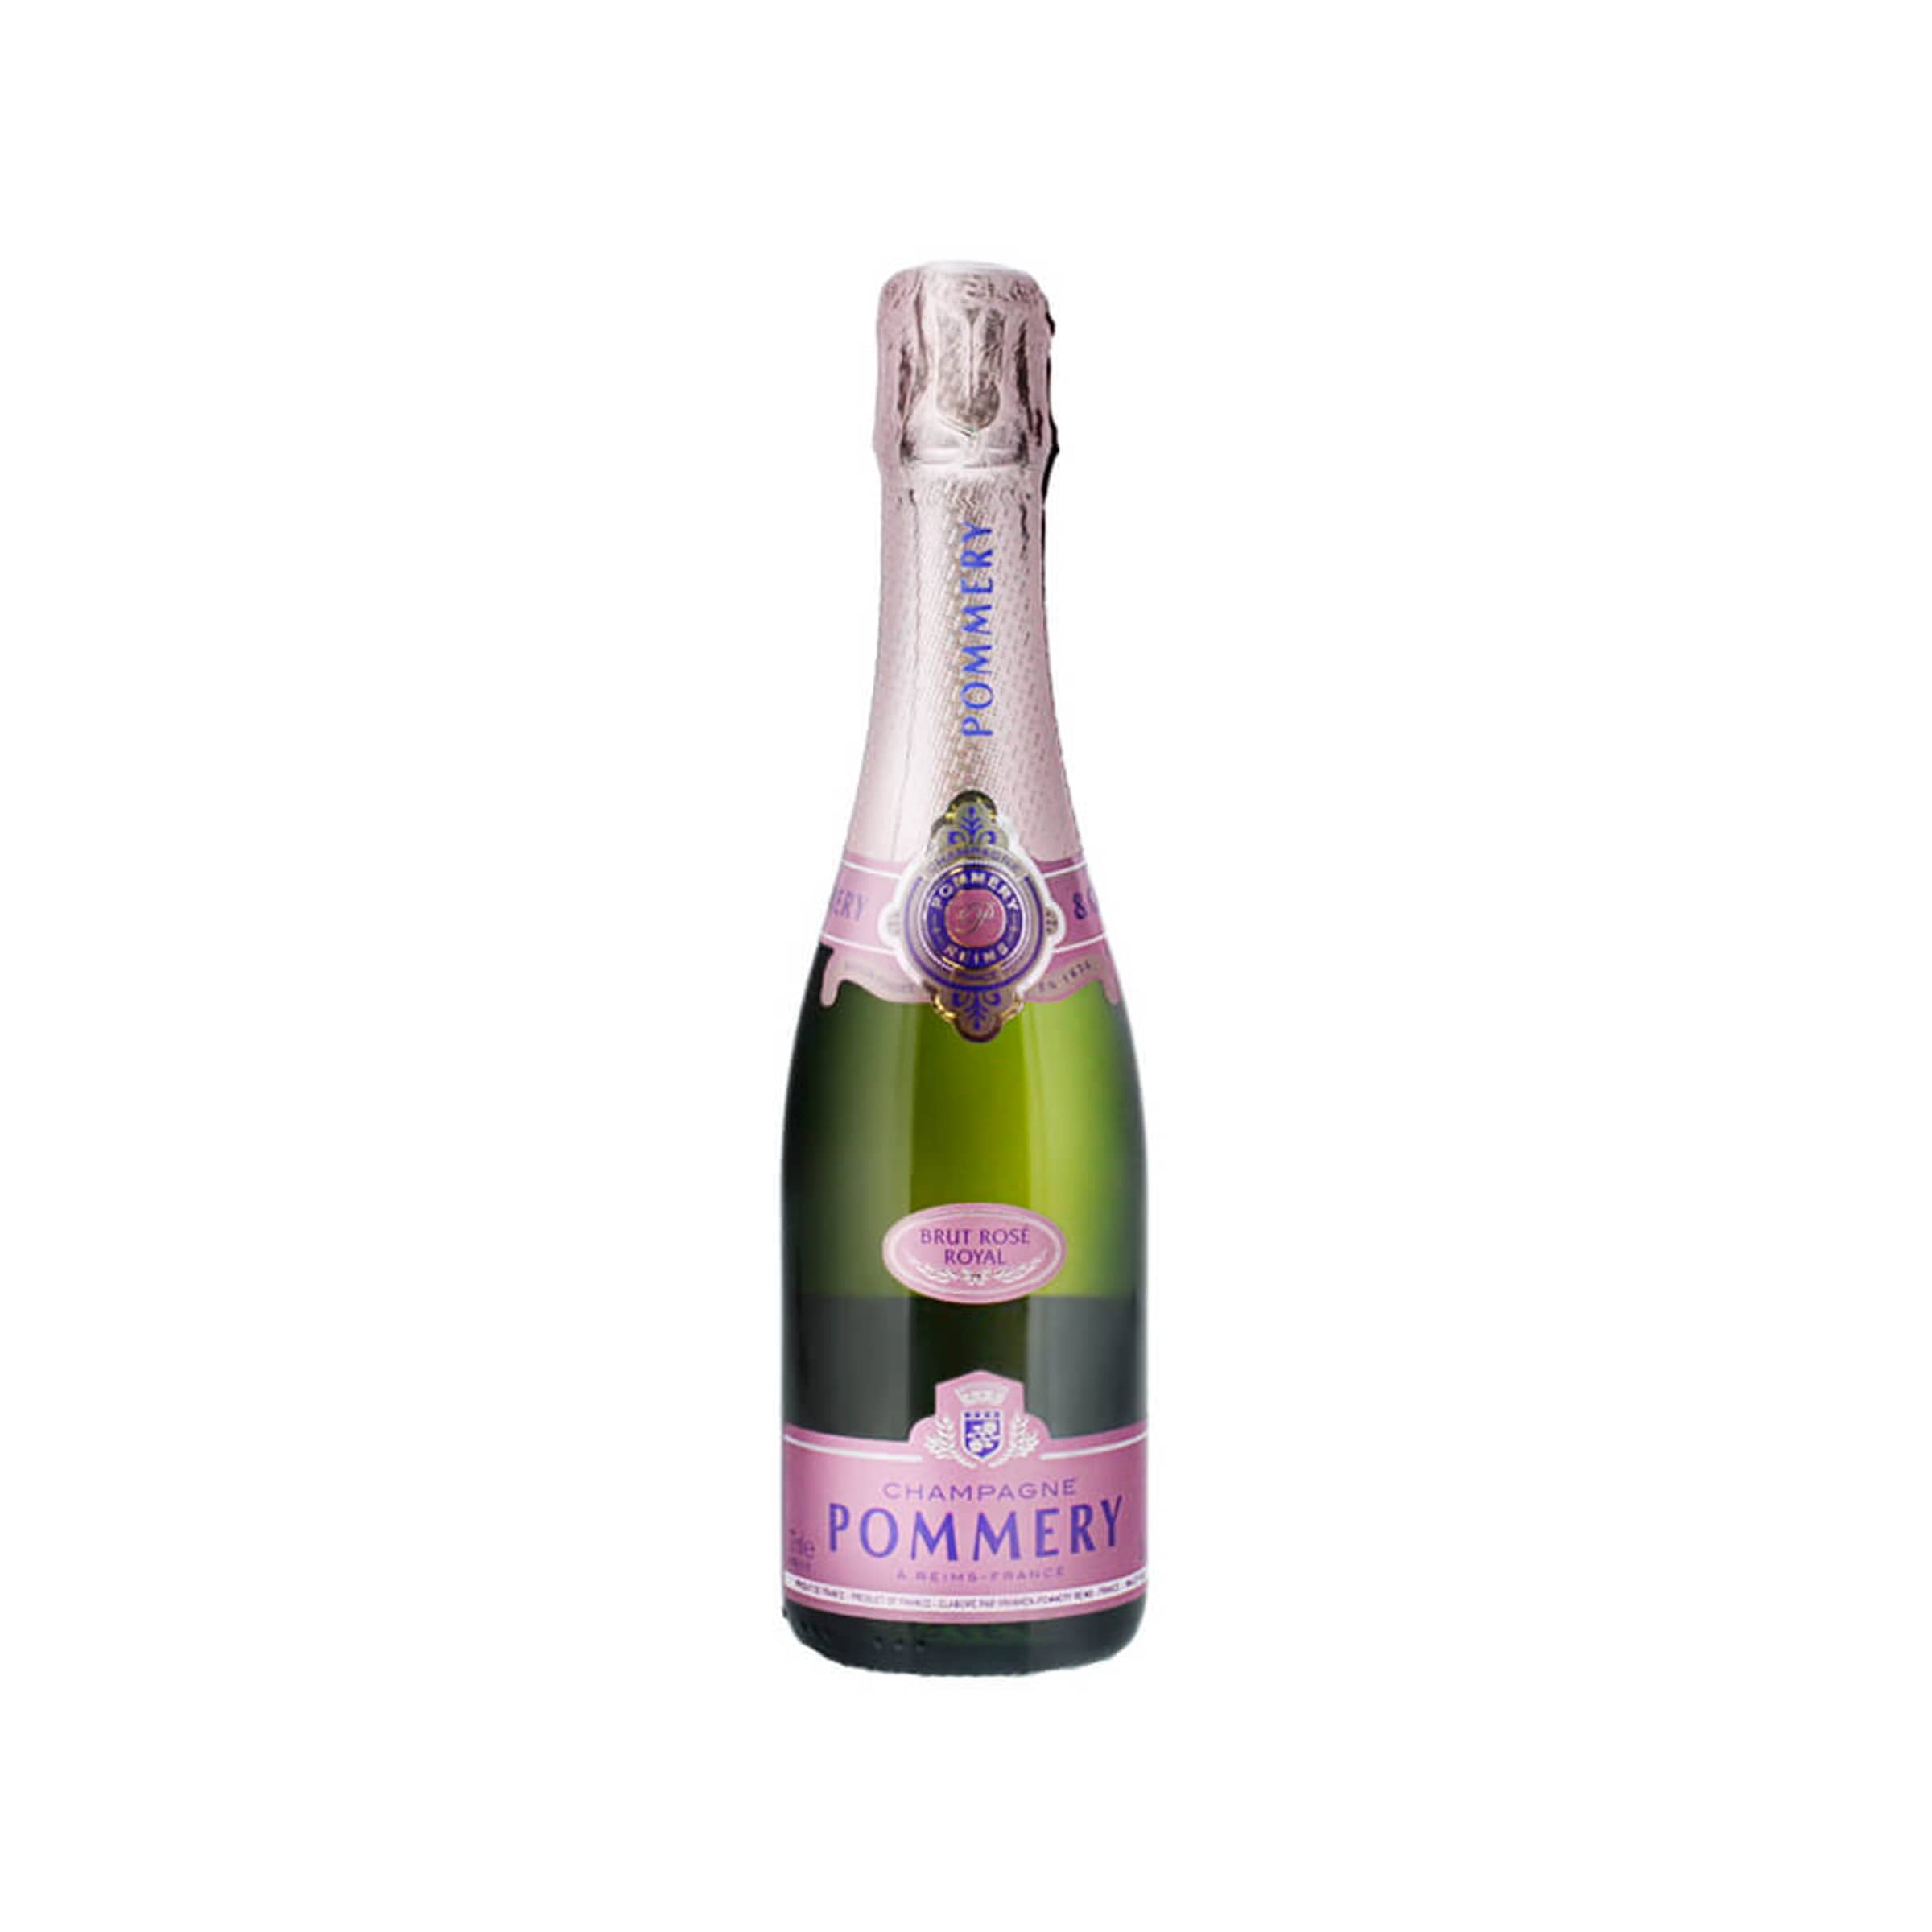 Pommery Rosé Royal Champagner Brut 37.5cl